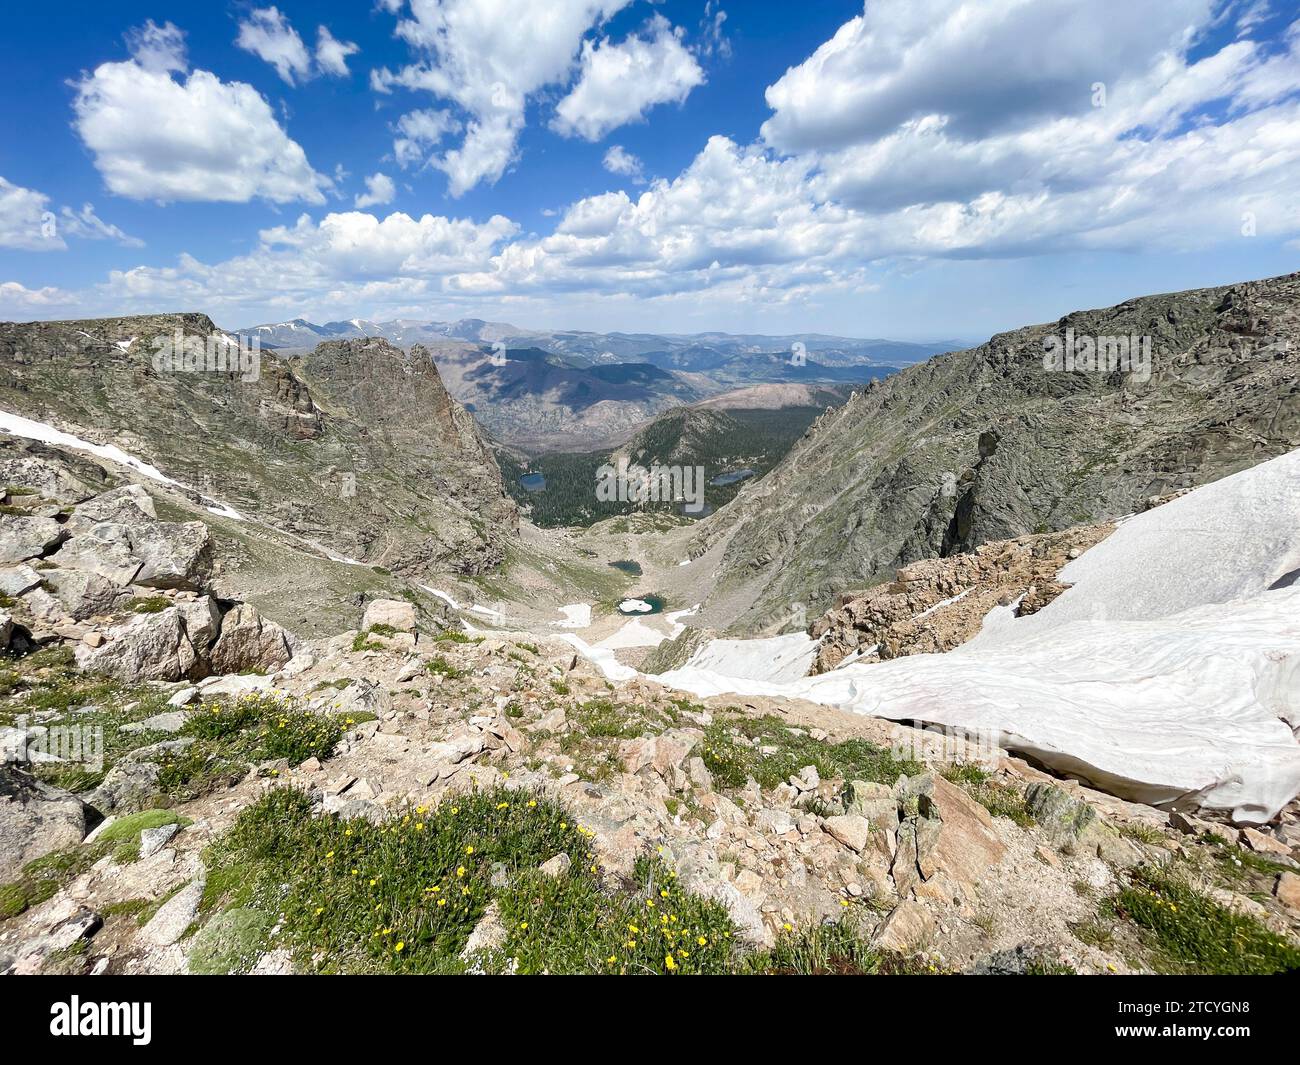 Surplombant une vallée verdoyante et des lacs alpins, cette vue depuis le parc national des montagnes Rocheuses capture l'essence de la nature sauvage de haute altitude. Banque D'Images